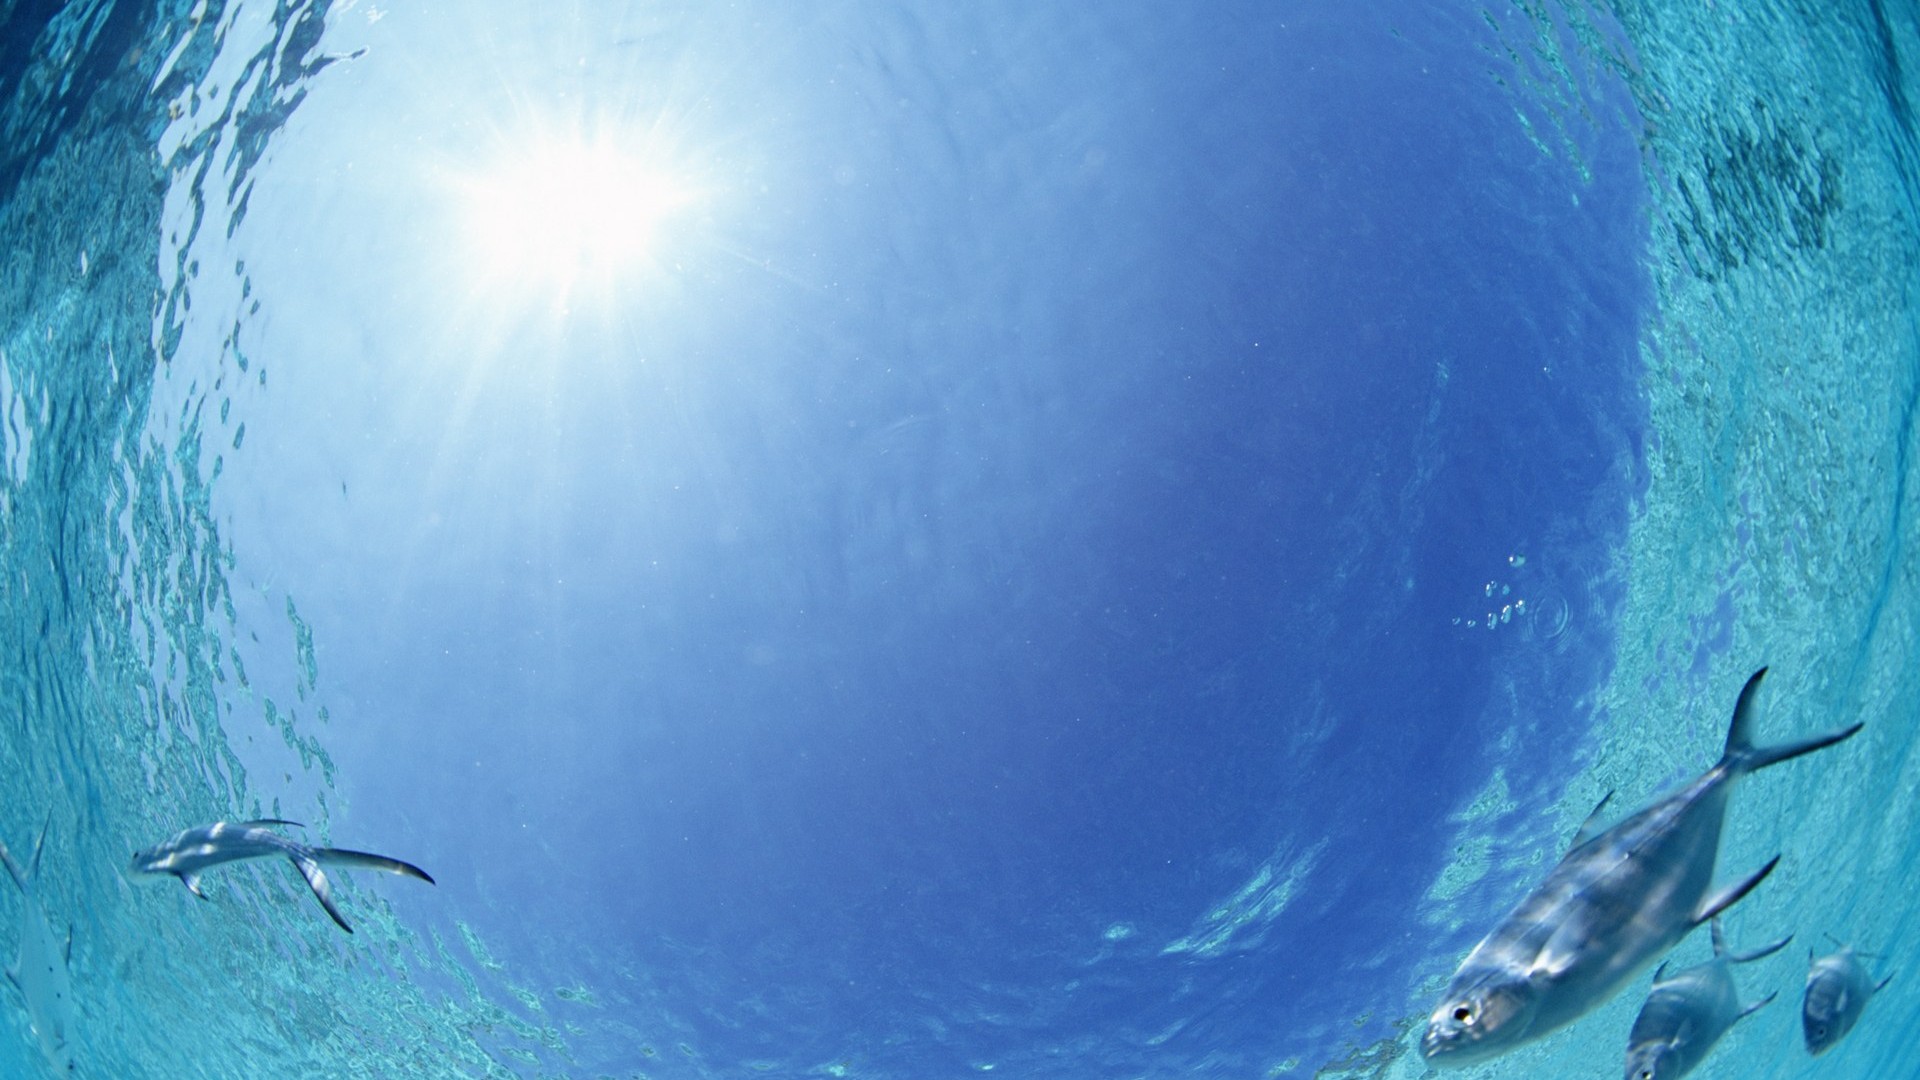 Maledivy vody a modrou oblohu #28 - 1920x1080